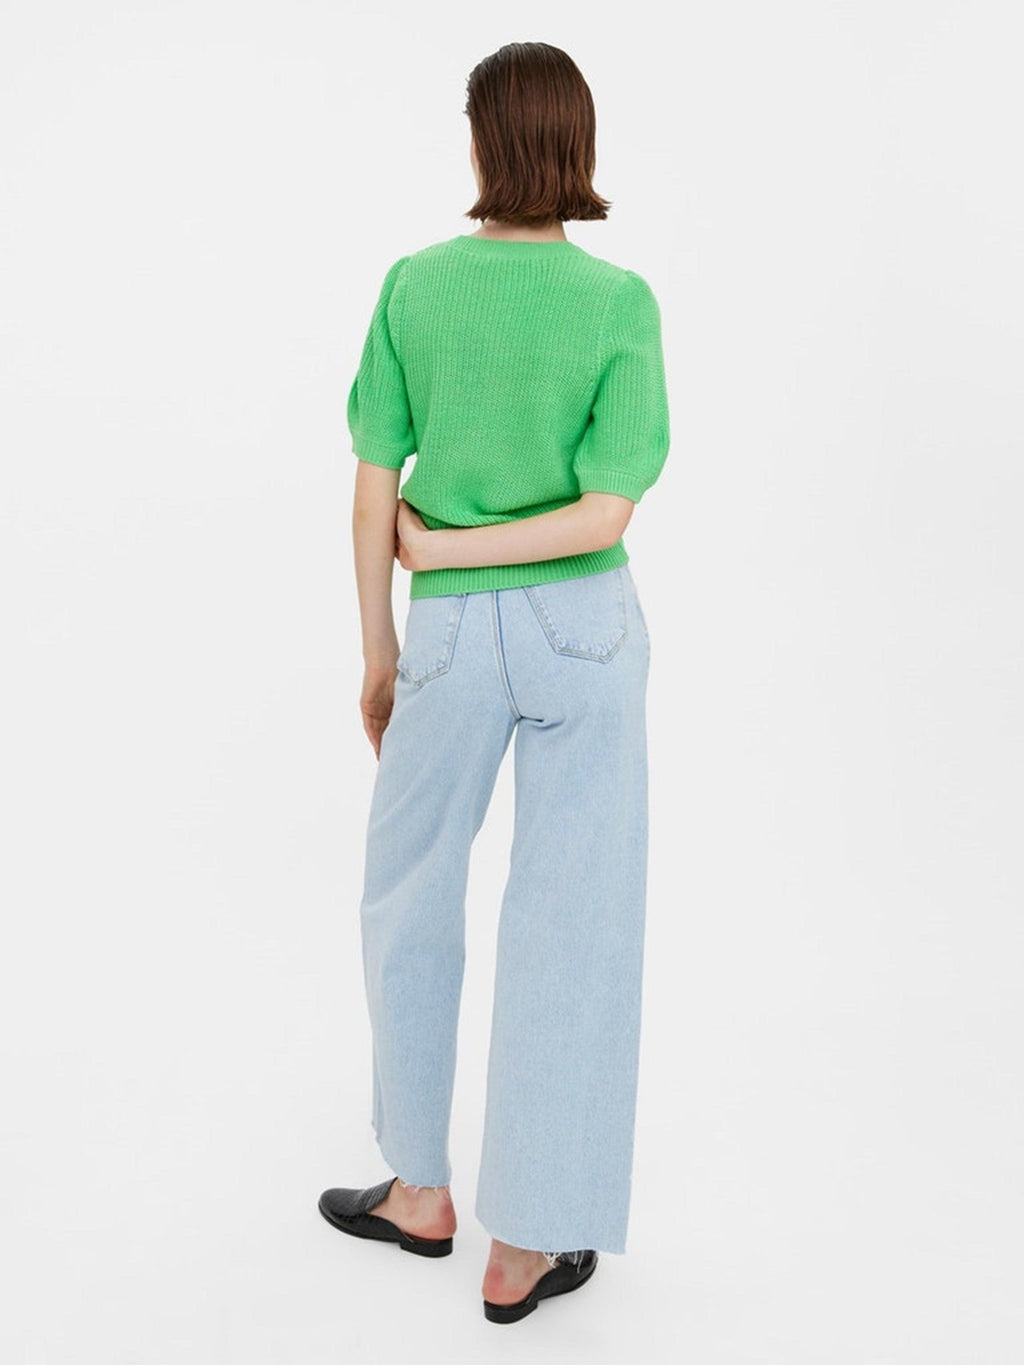 Liralea blouse - Iers groen